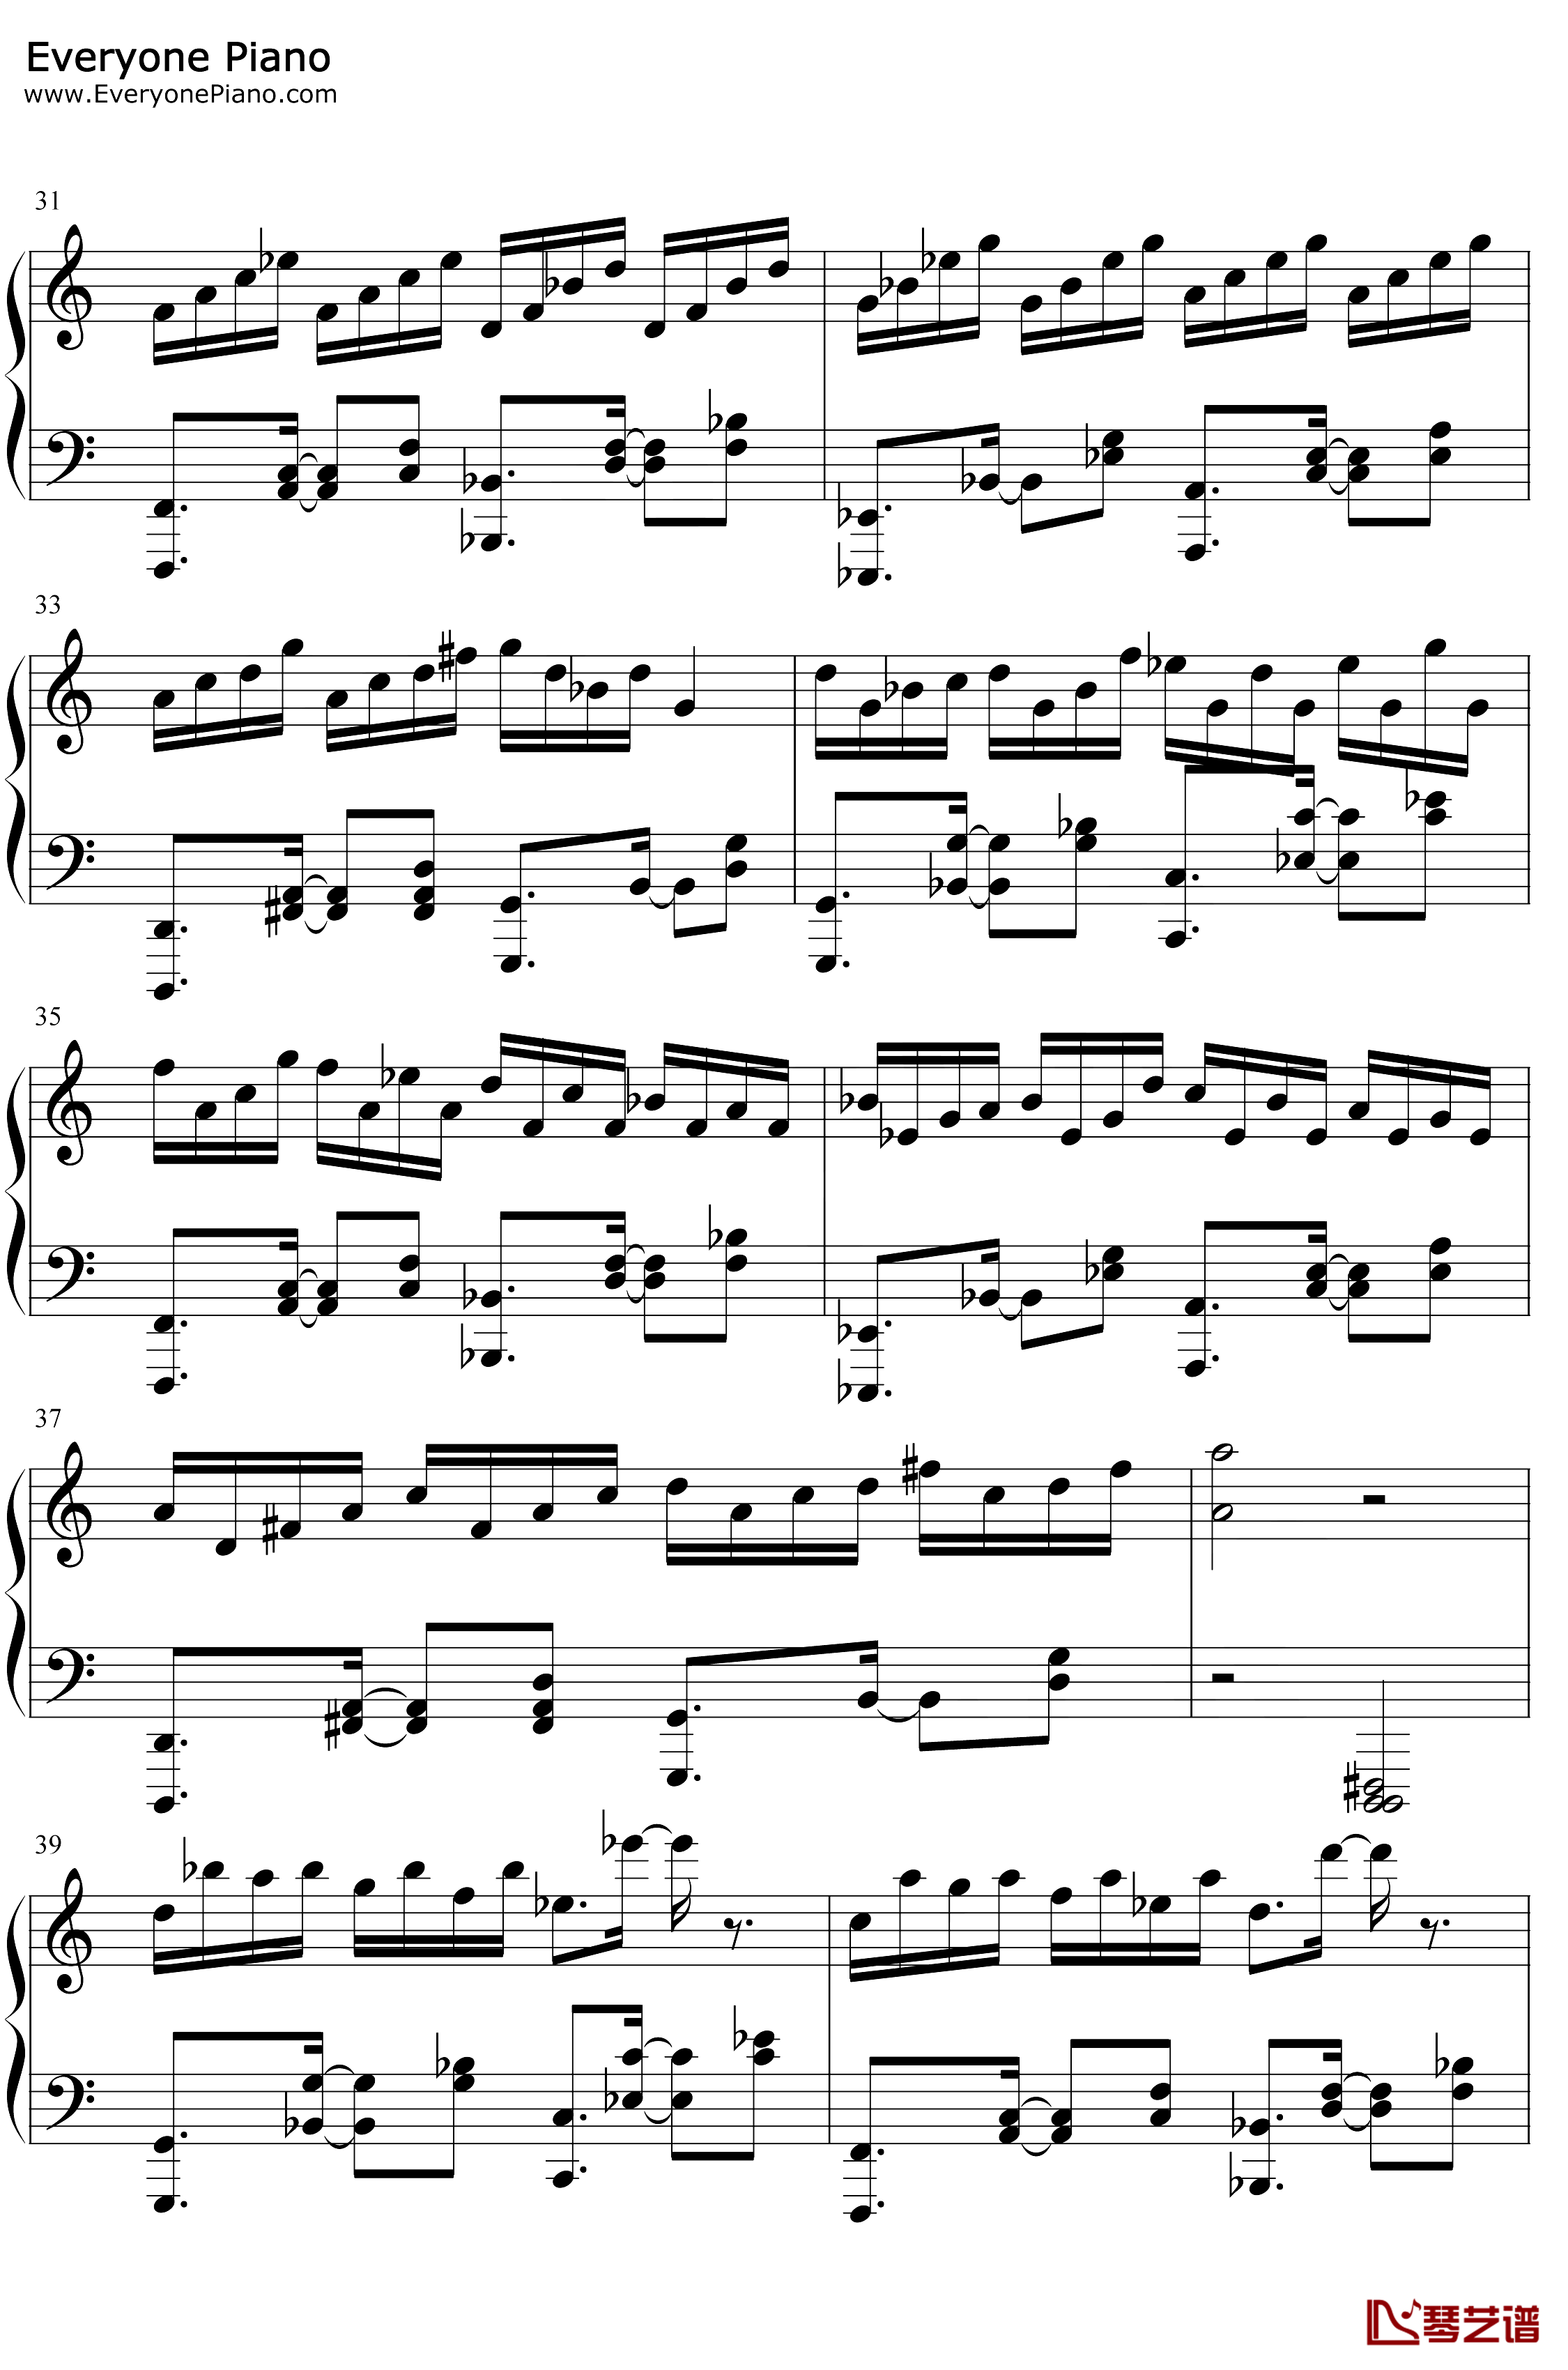 帕萨卡利亚克罗地亚变奏钢琴谱-Handel Mrvica-帕萨卡利亚克罗地亚变奏4